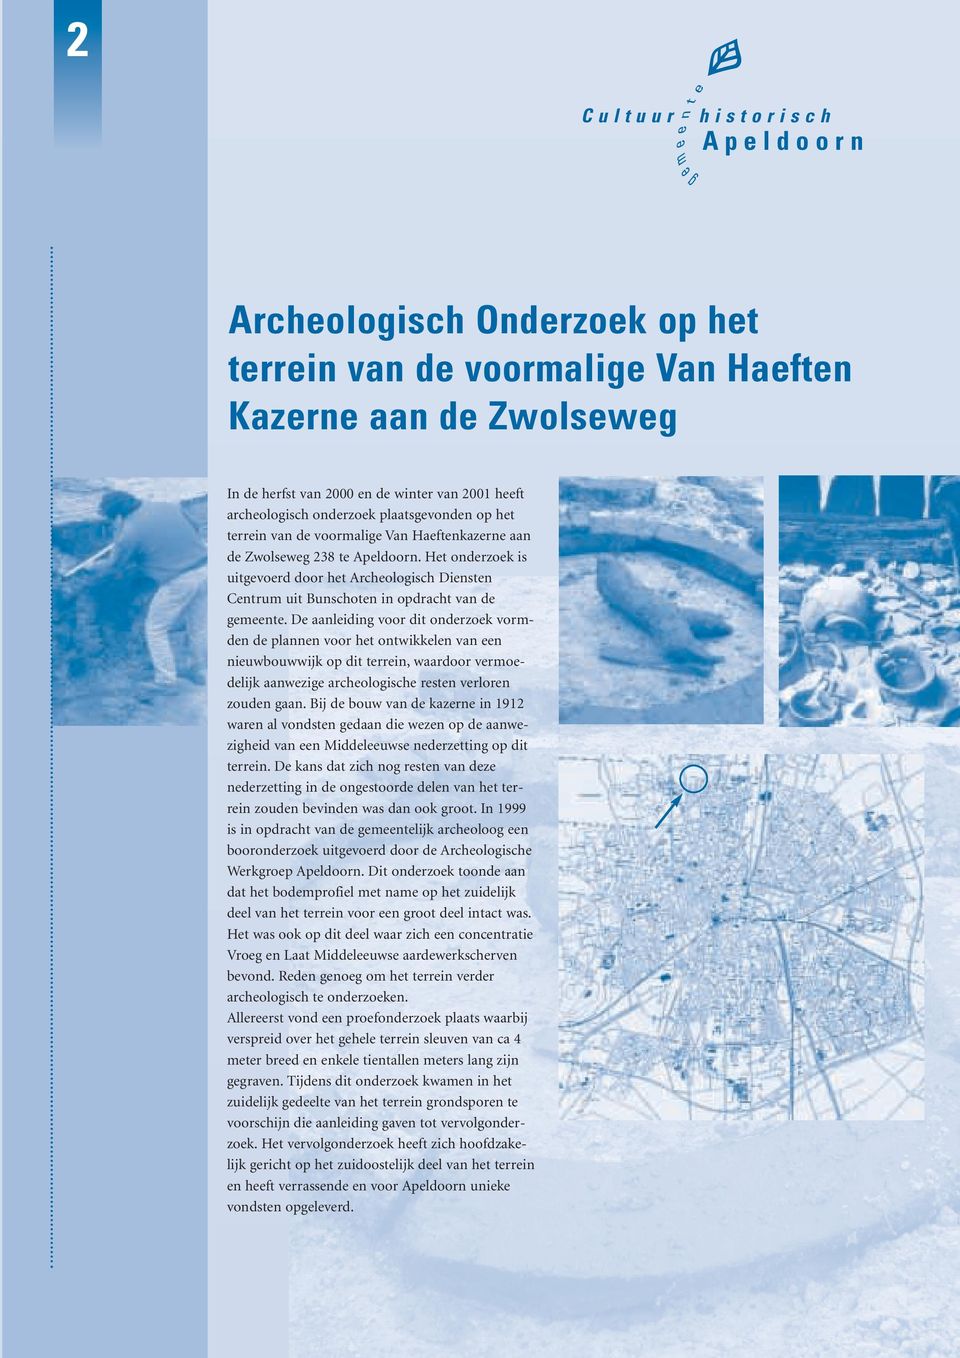 Het onderzoek is uitgevoerd door het Archeologisch Diensten Centrum uit Bunschoten in opdracht van de gemeente.